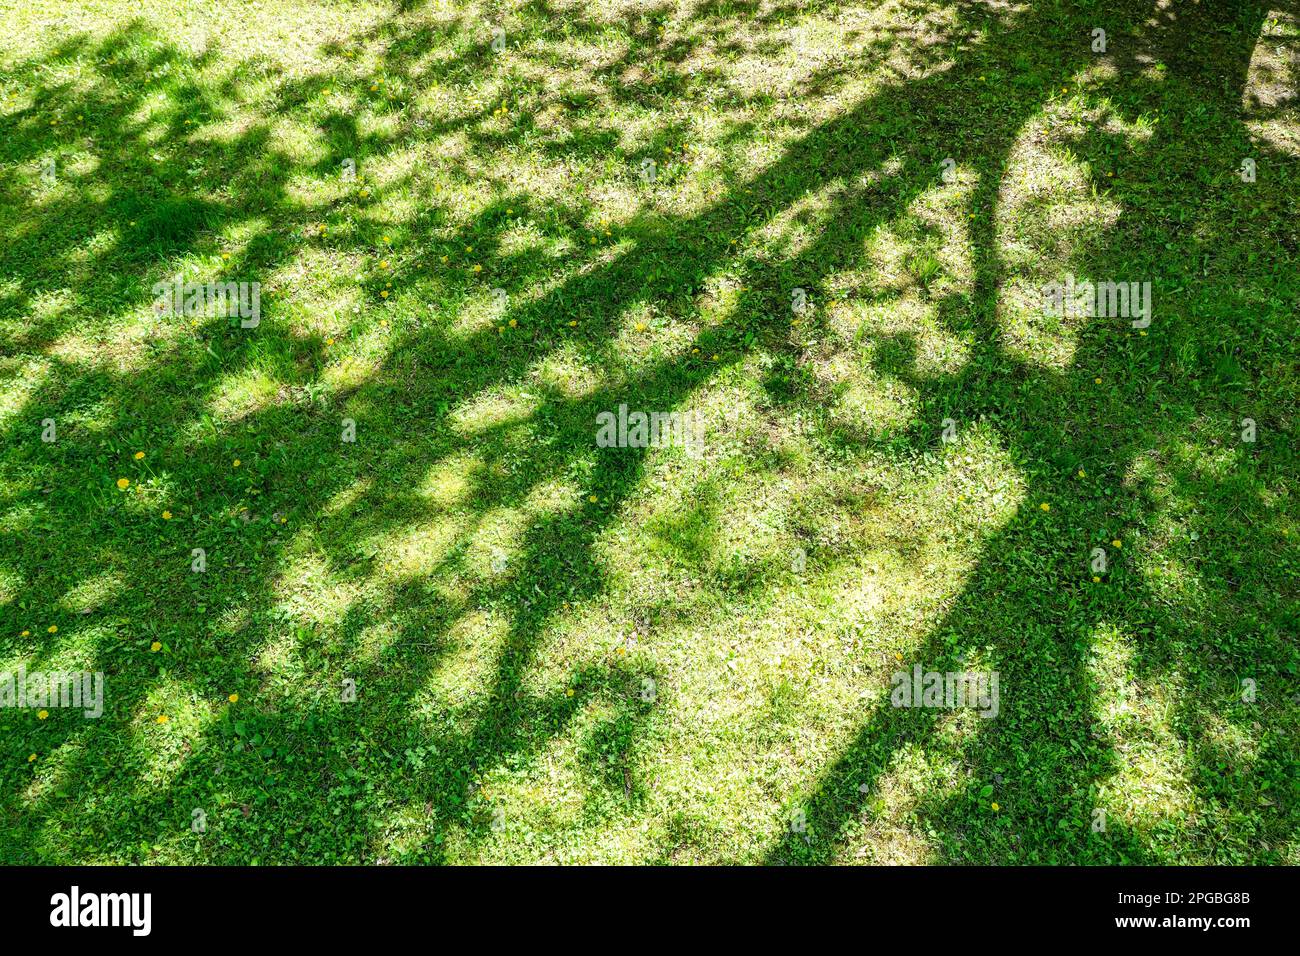 prato verde con ombra d'albero. giardino primaverile nelle giornate di sole. foto aerea, vista dall'alto. Foto Stock